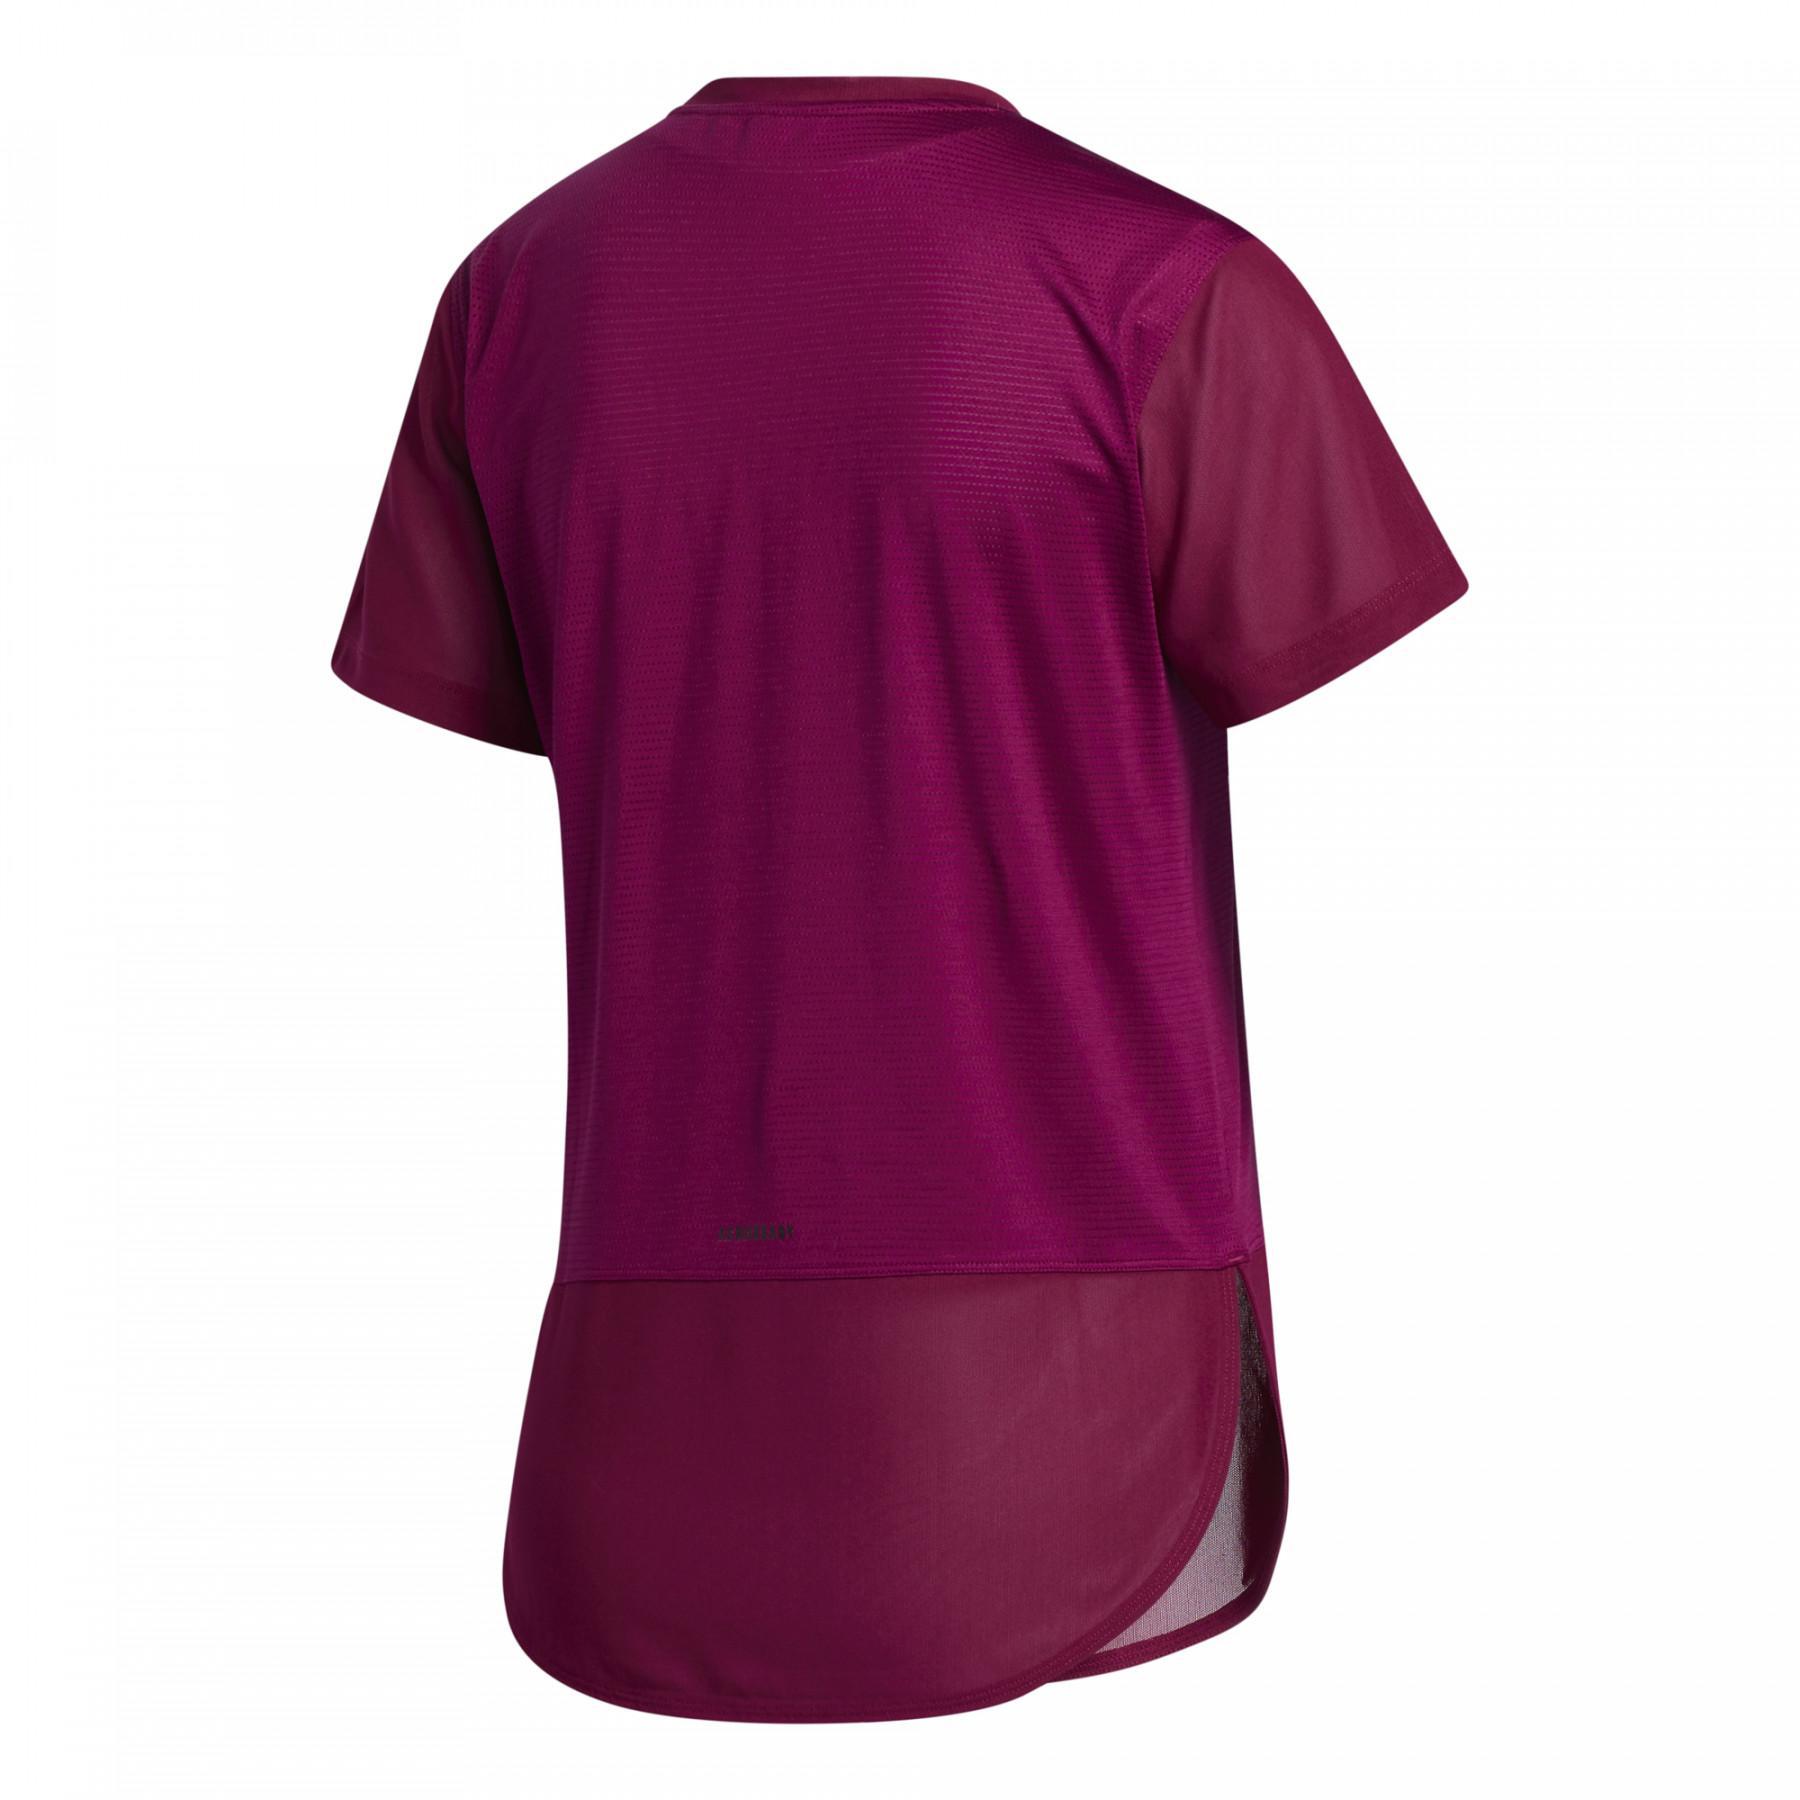 Frauen-T-Shirt adidas Aeroeady Level 3